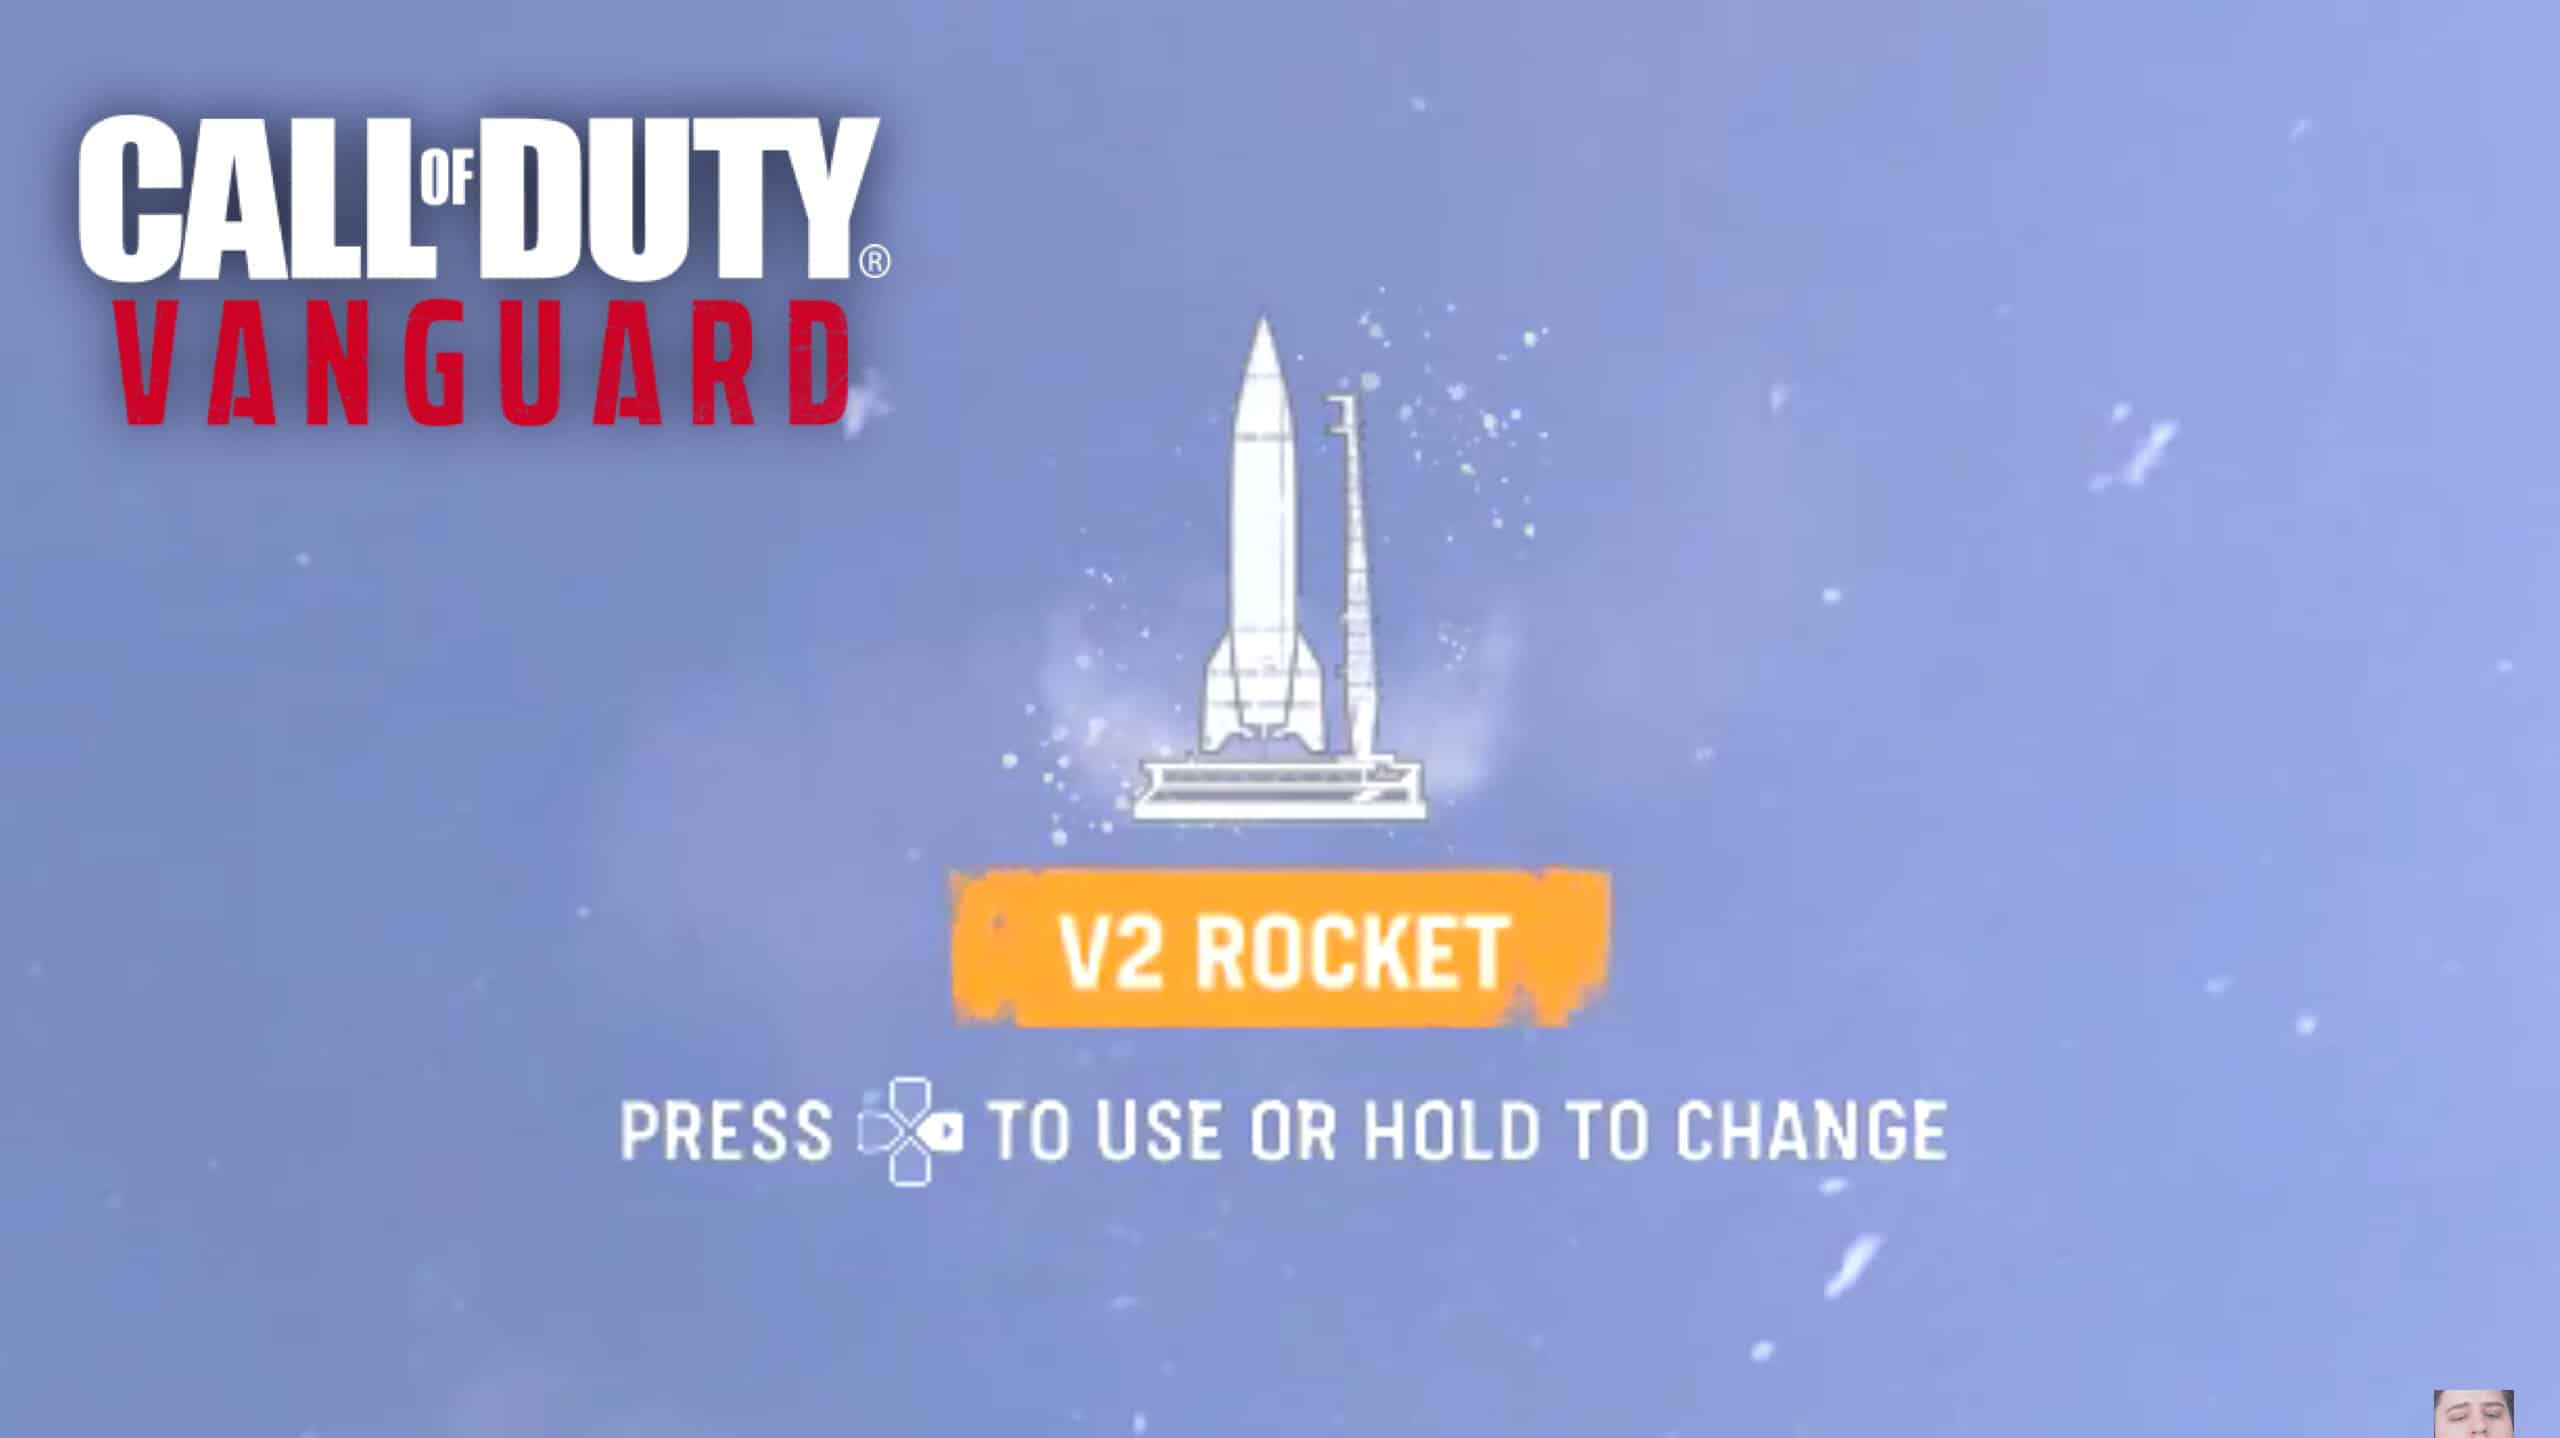 Vanguard V2 rocket